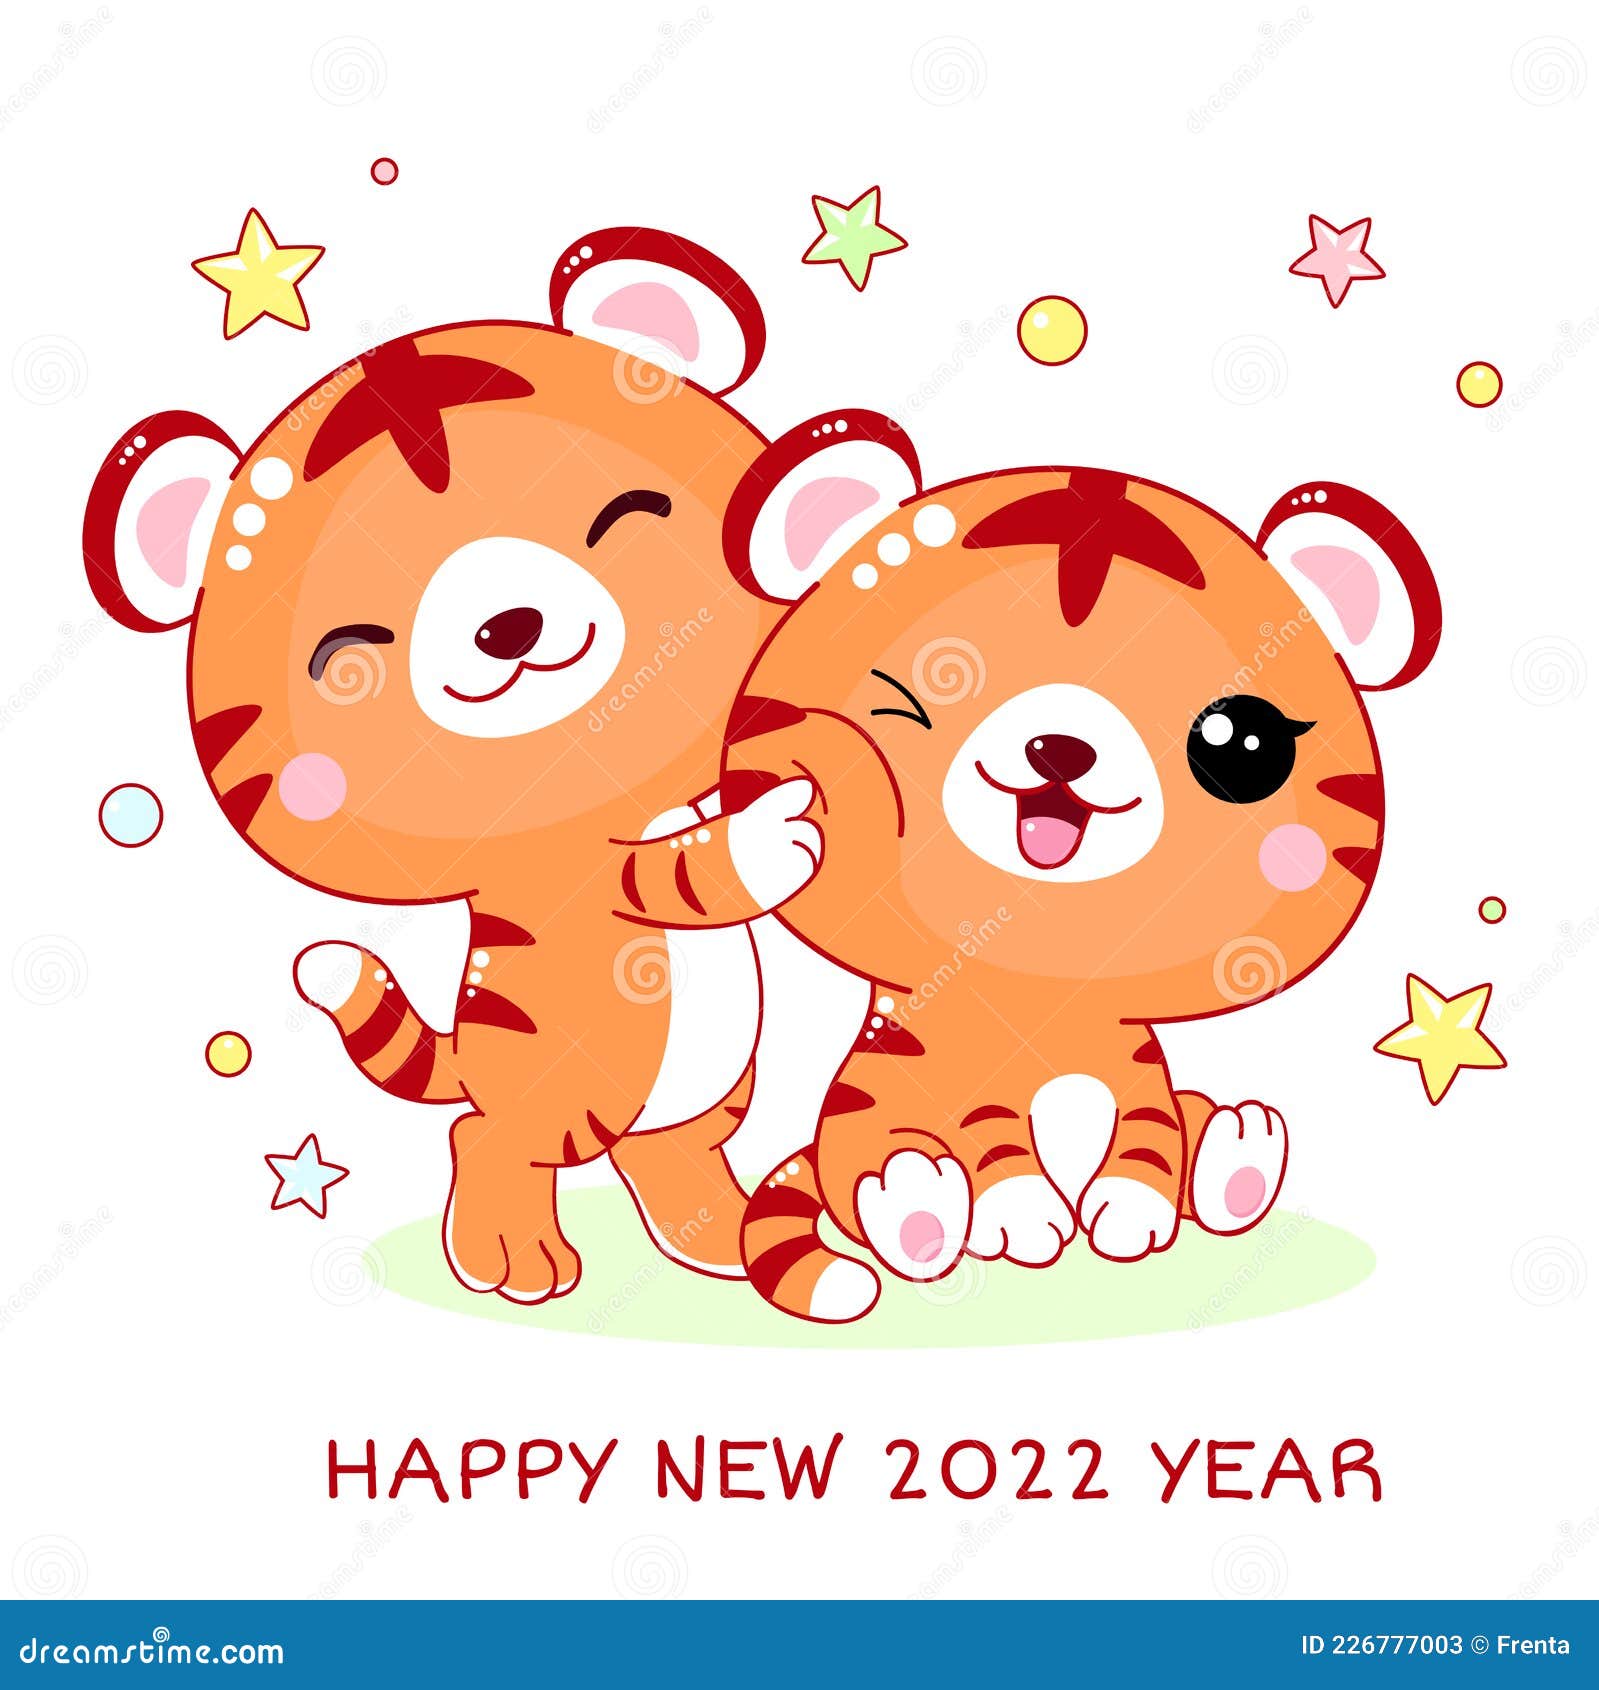 新年快乐. 可爱的小虎打的贺卡向量例证. 插画包括有愉快, 子项, 汉语  image